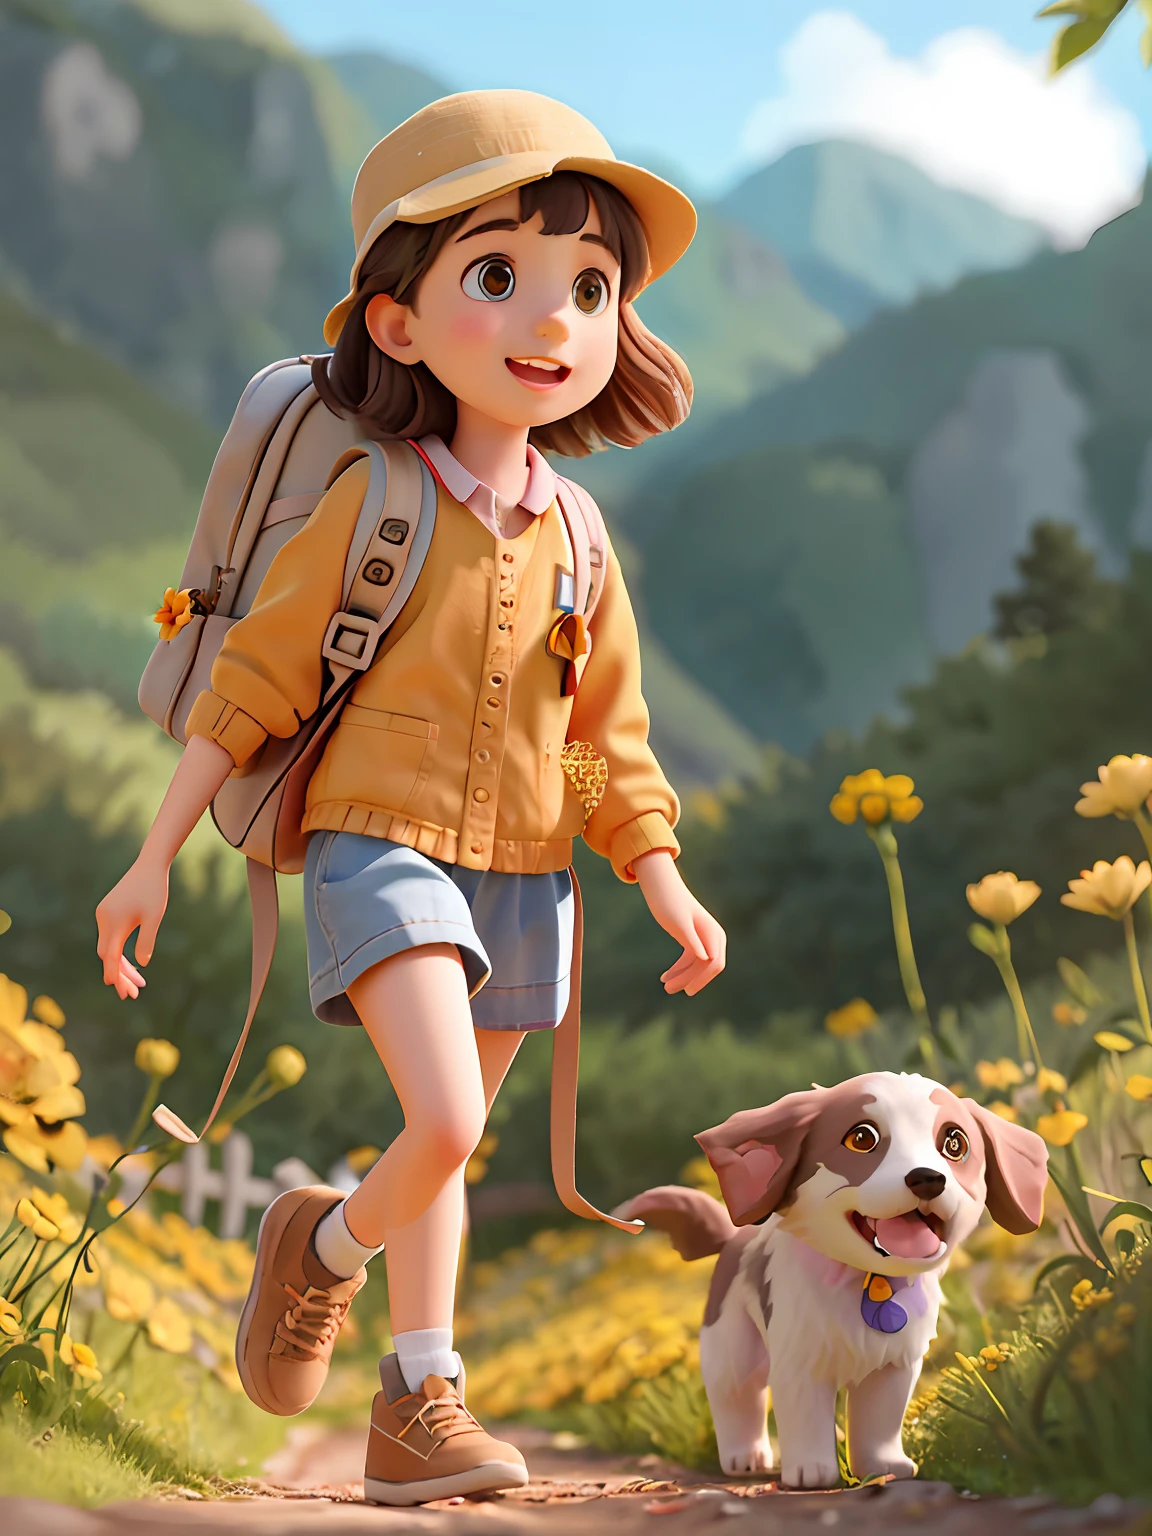 一个非常迷人的背包和她可爱的边境牧羊犬小狗享受一个可爱的春天郊游周围美丽的黄色花朵和大自然. 该插画为4K高清插画，面部特征细节丰富，具有卡通风格的视觉效果.